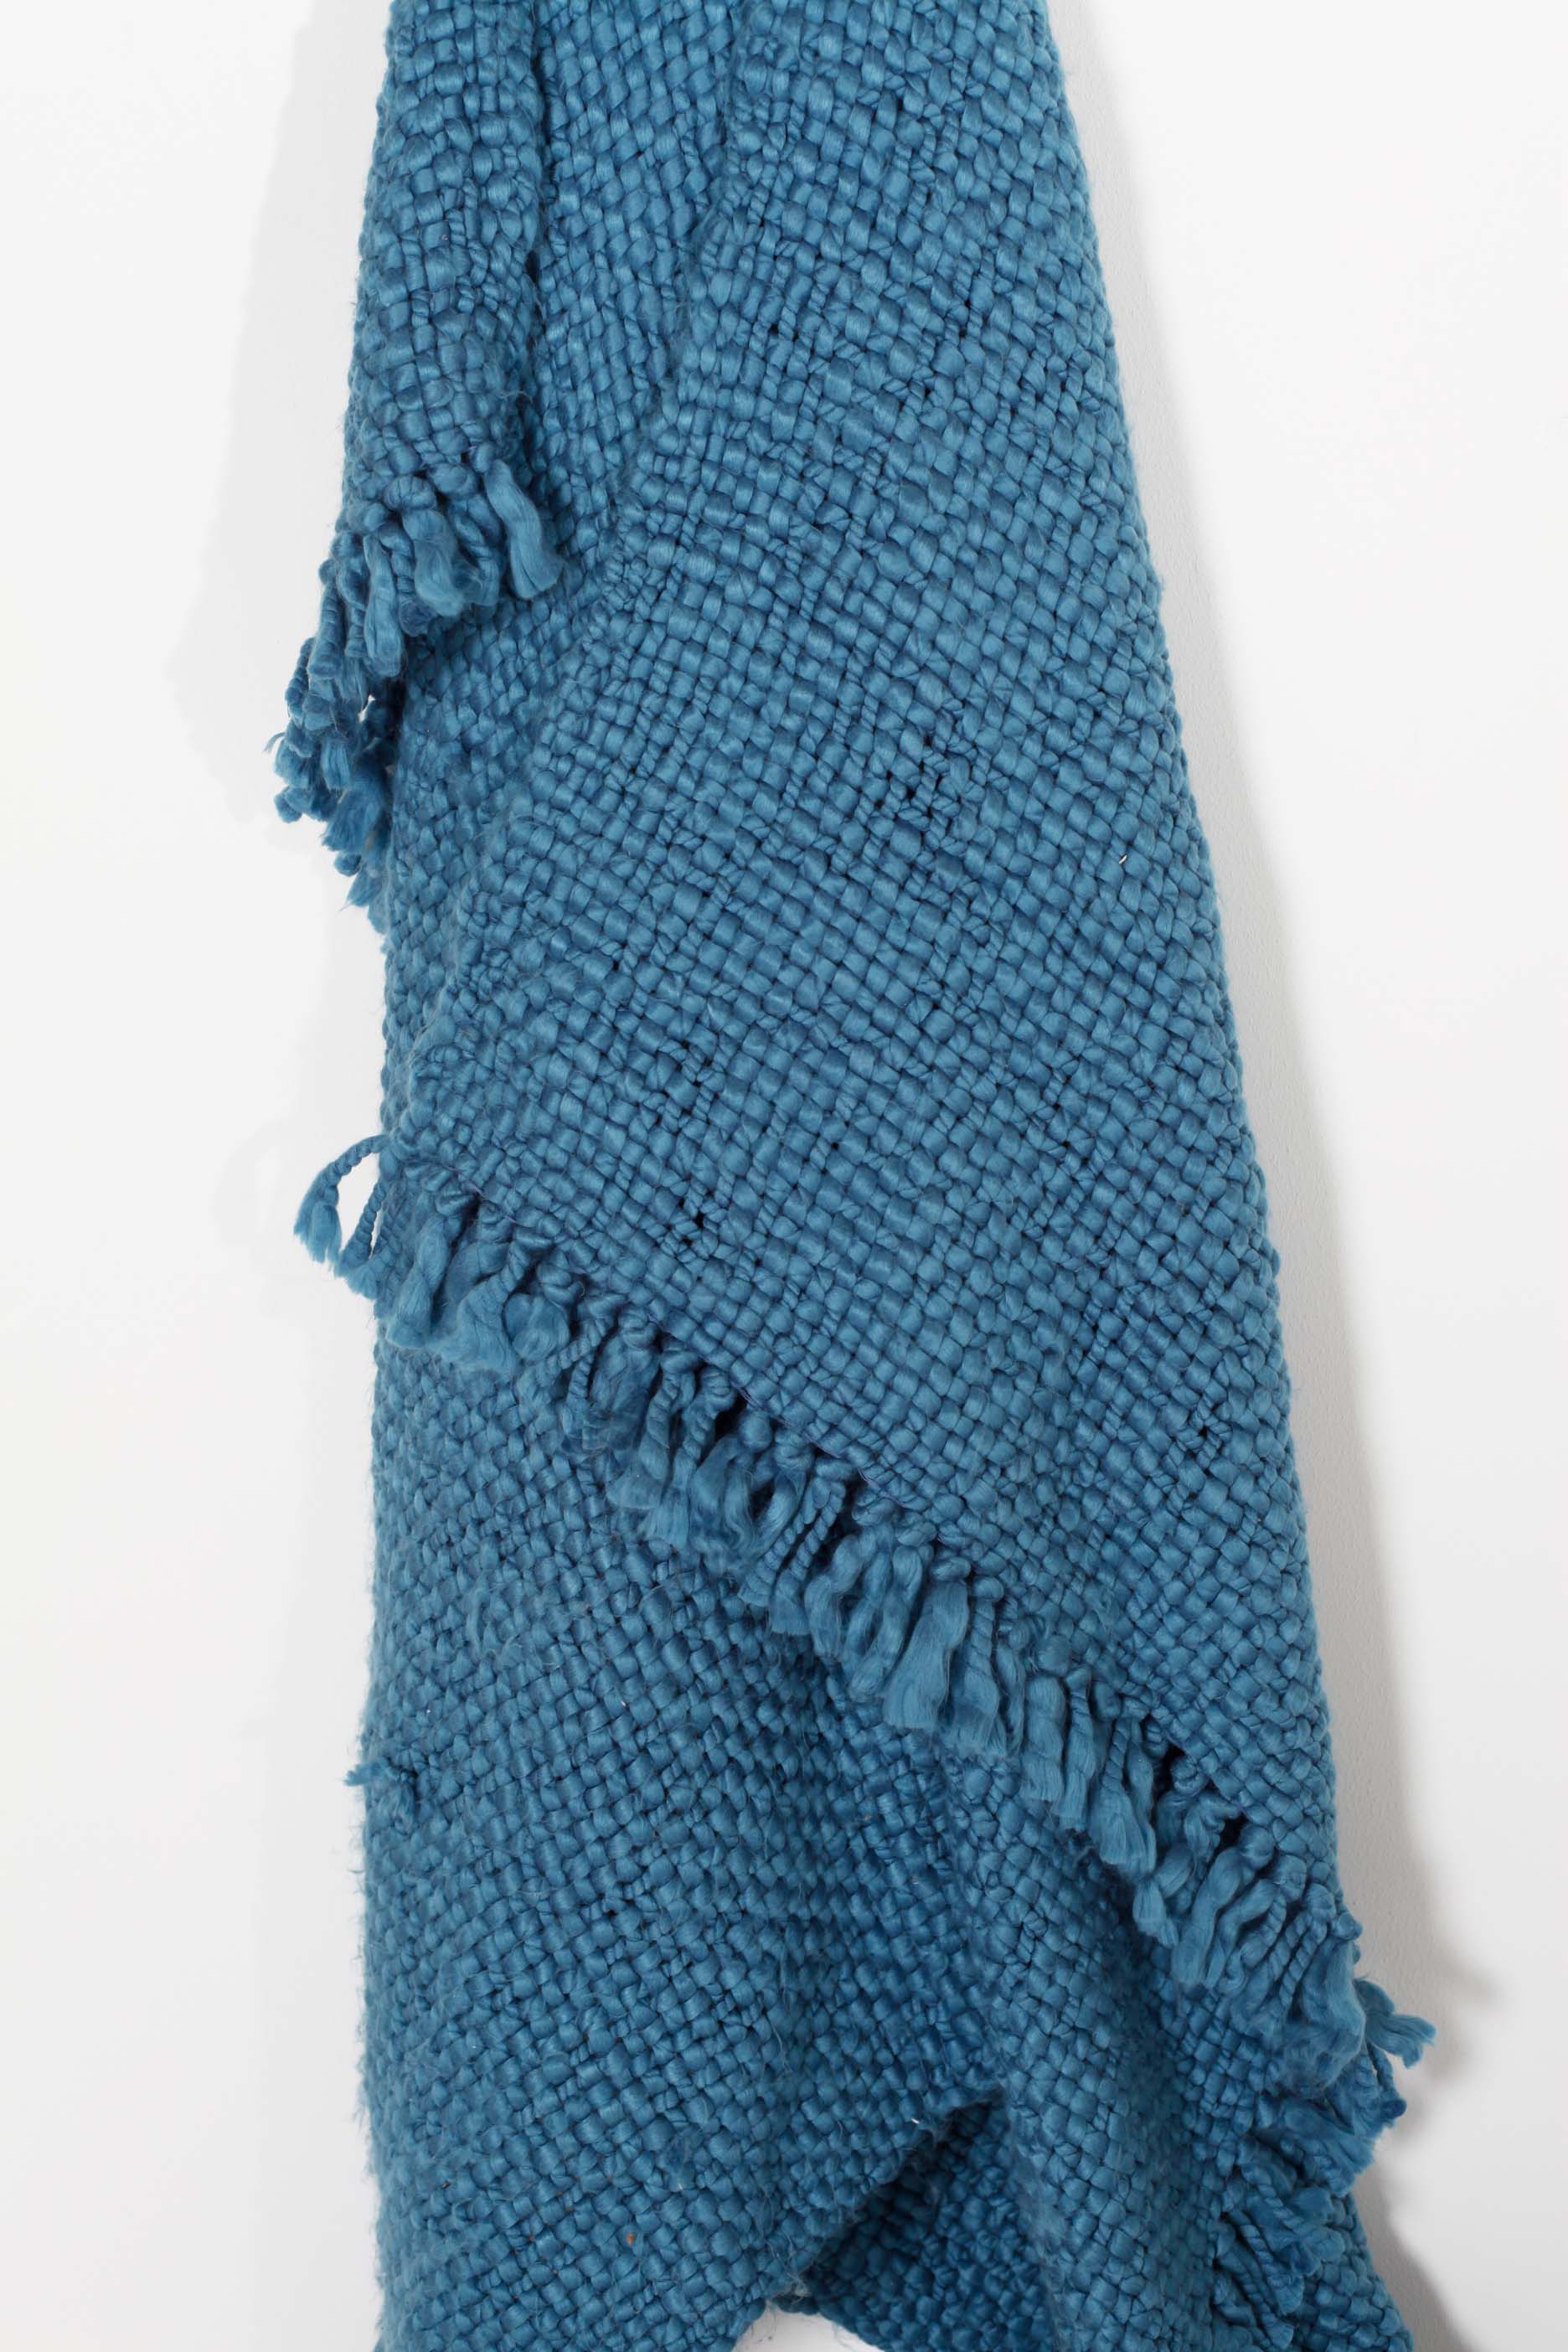 Blue Wool Blanket/Throw